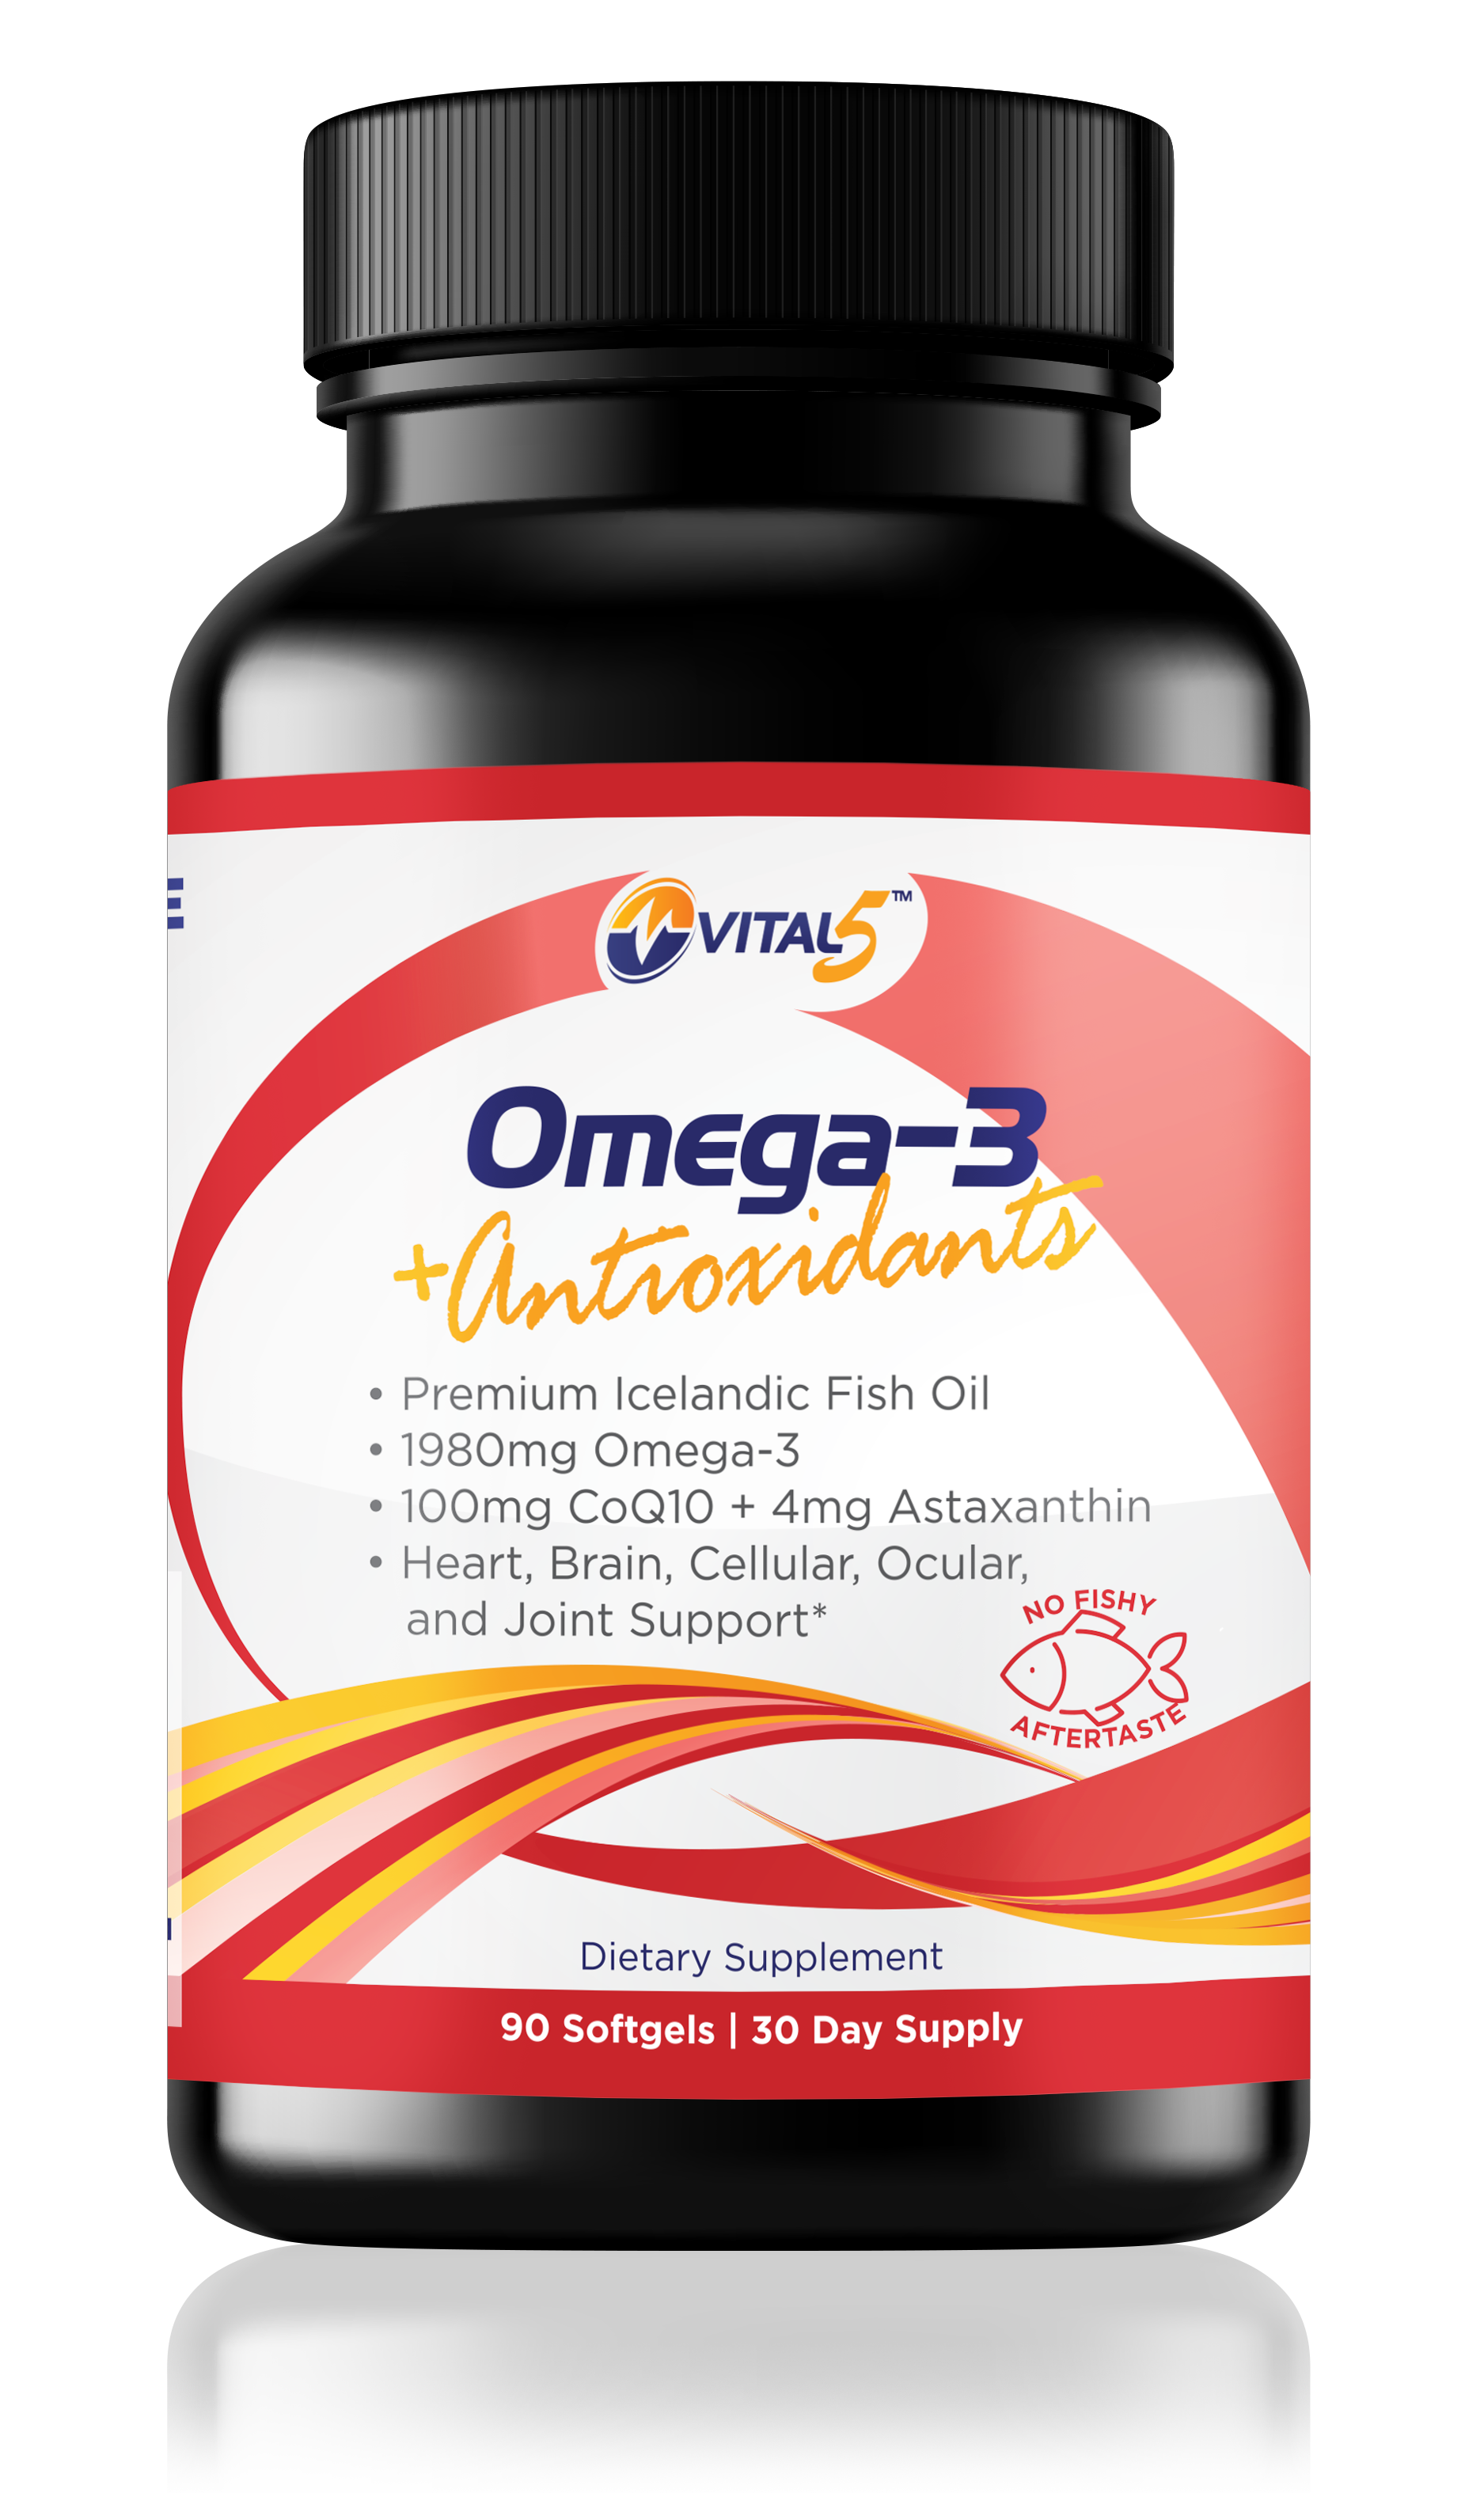 Vital 5 Omega 3 + Antioxidants